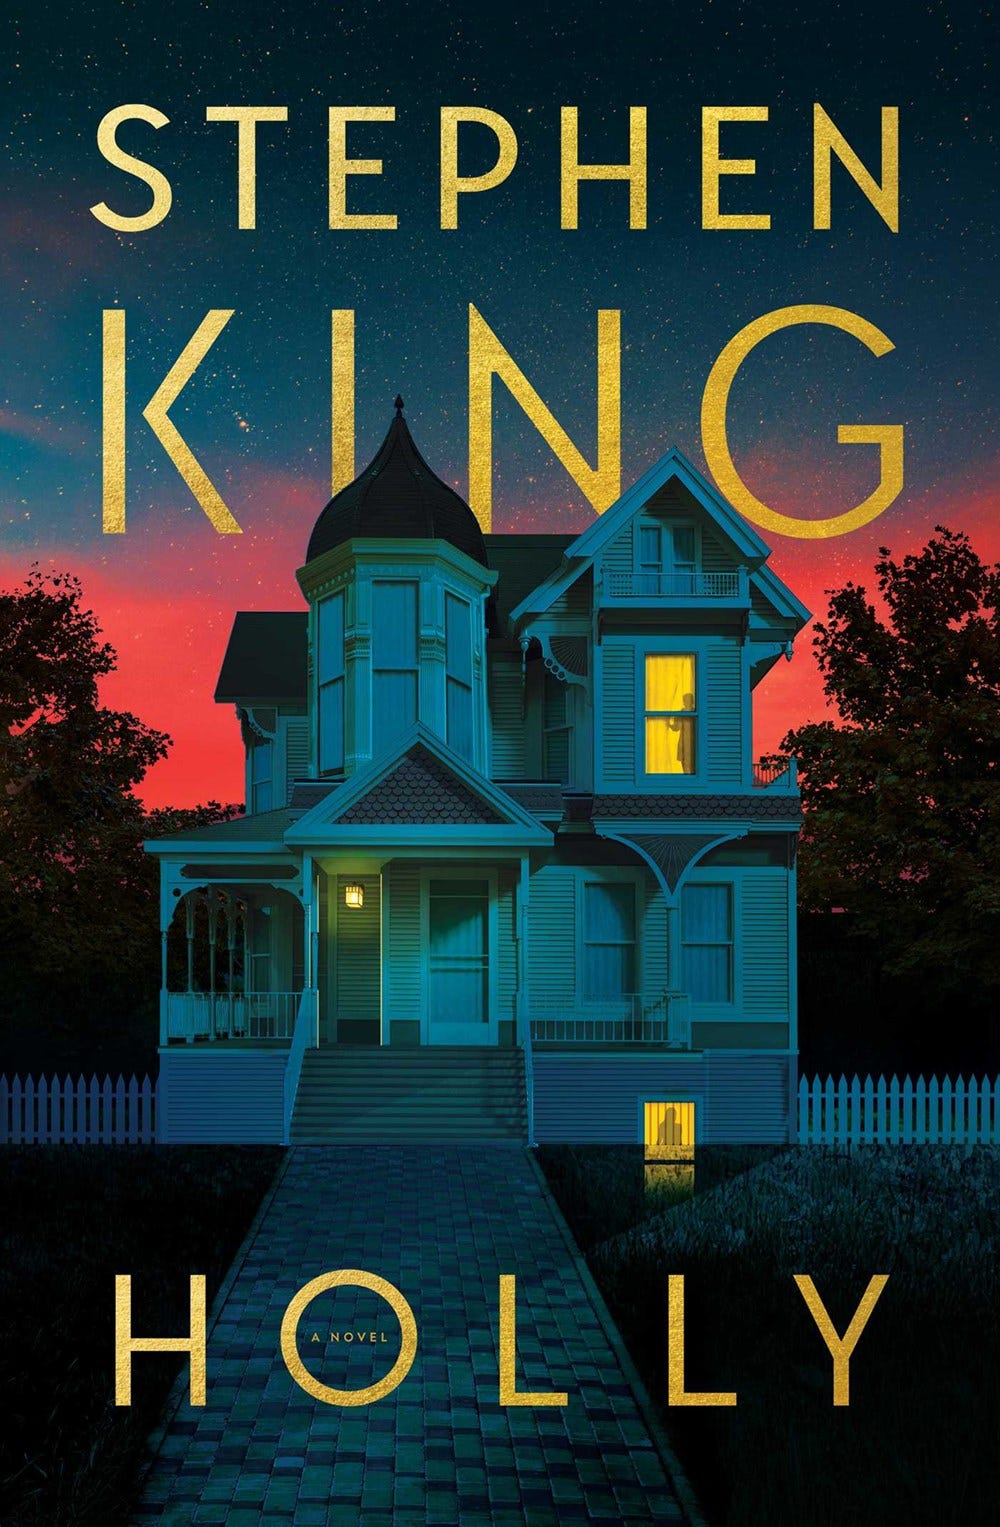 20 Best Stephen King Books - Reading List For New Fans